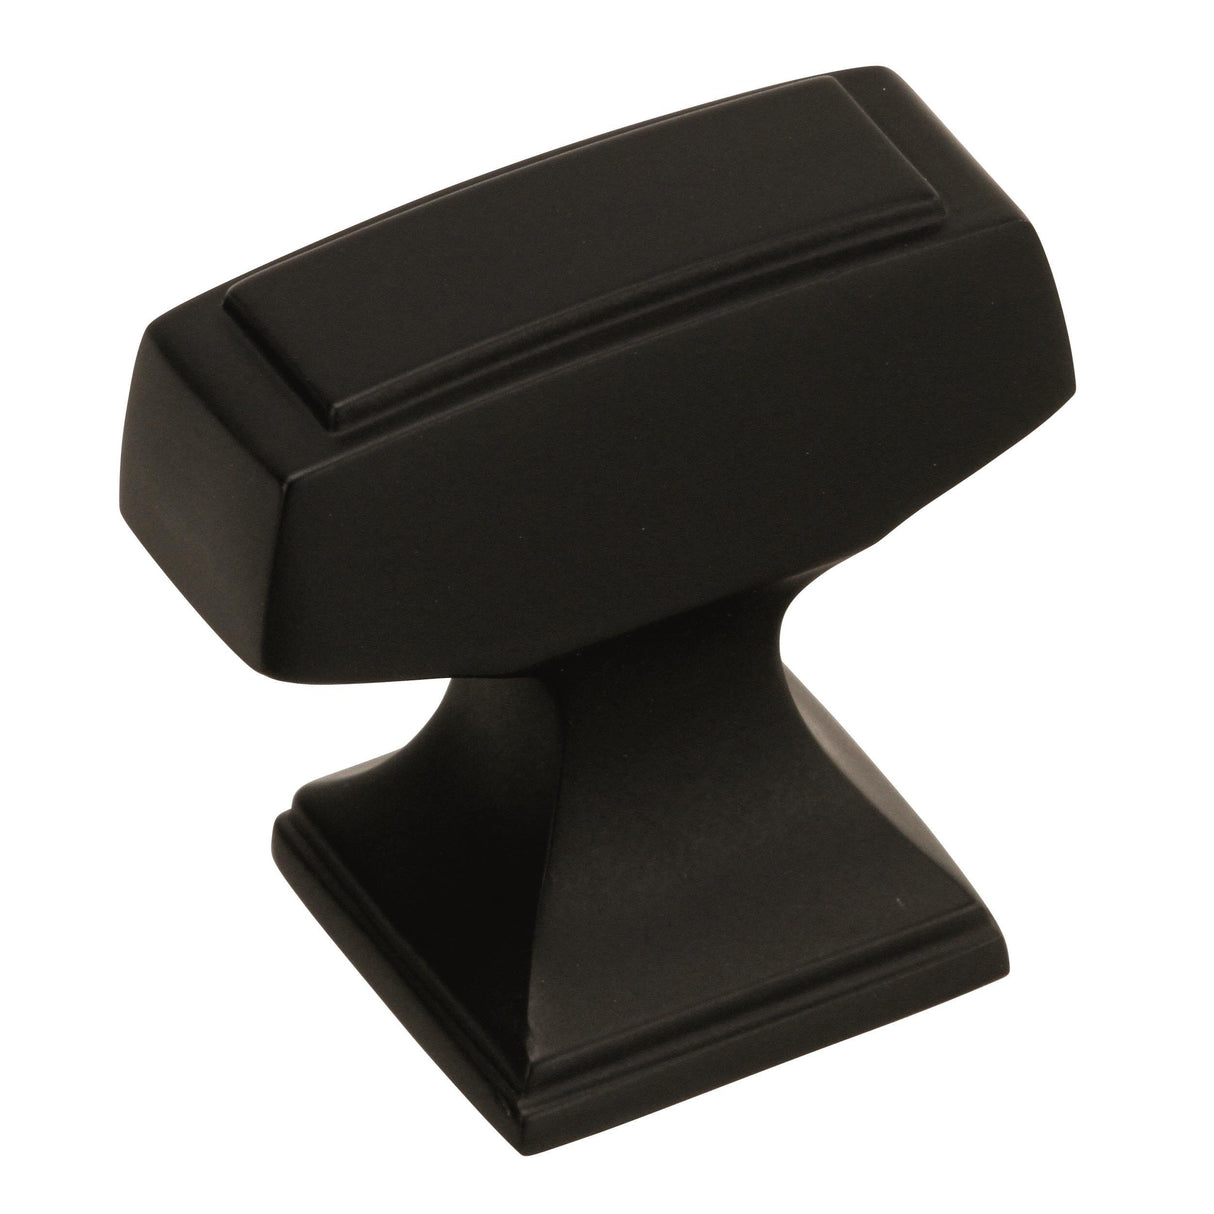 Amerock Cabinet Knob Black Bronze 1-1/4 inch (32 mm) Length Mulholland 1 Pack Drawer Knob Cabinet Hardware